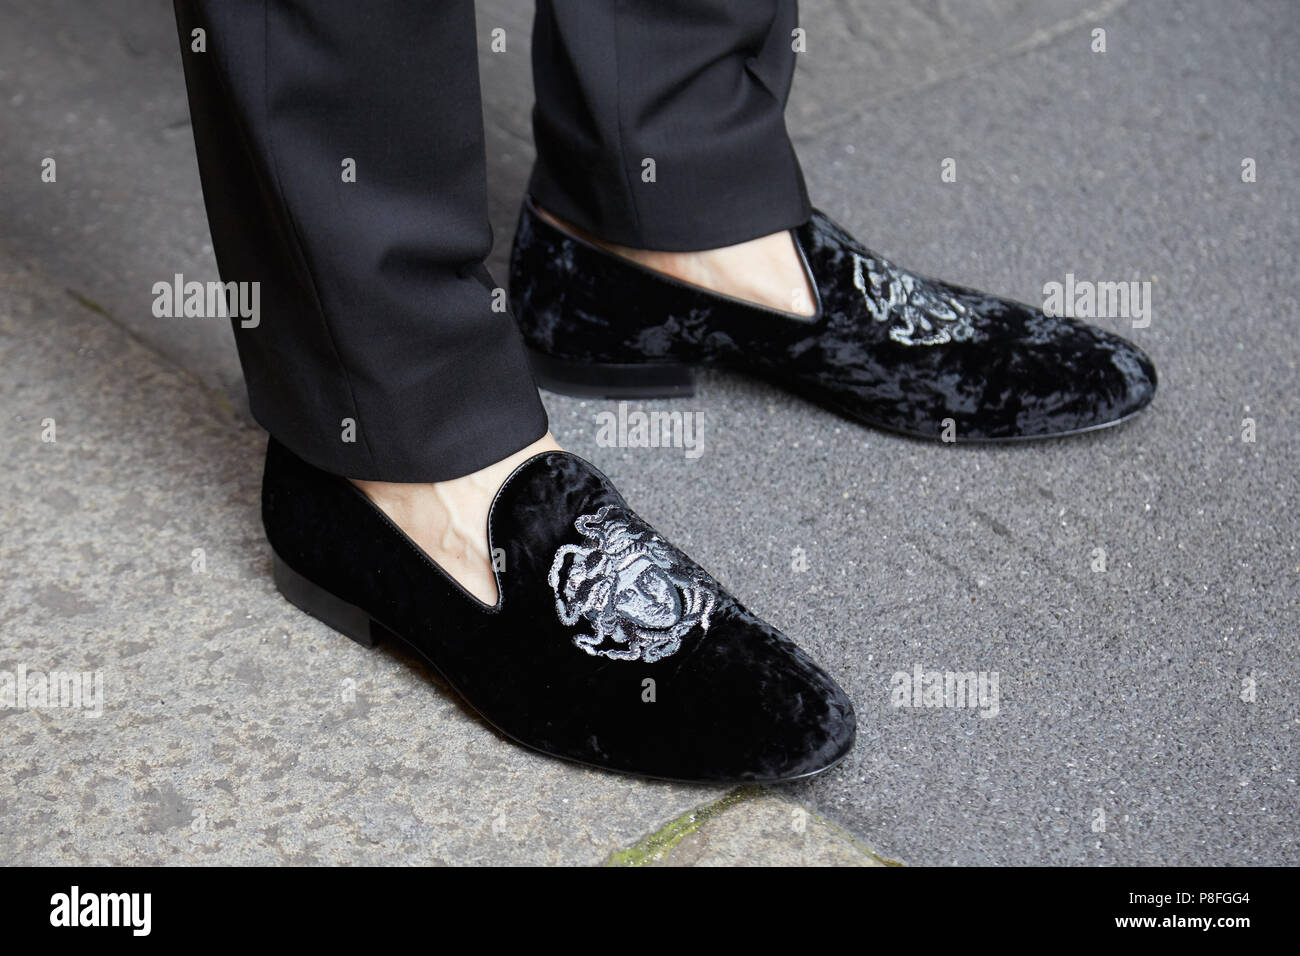 Milán - 16 de junio: el hombre con zapatos de Versace de terciopelo negro con cabeza de antes de Versace Fashion Show, la Semana de la de Milán street style